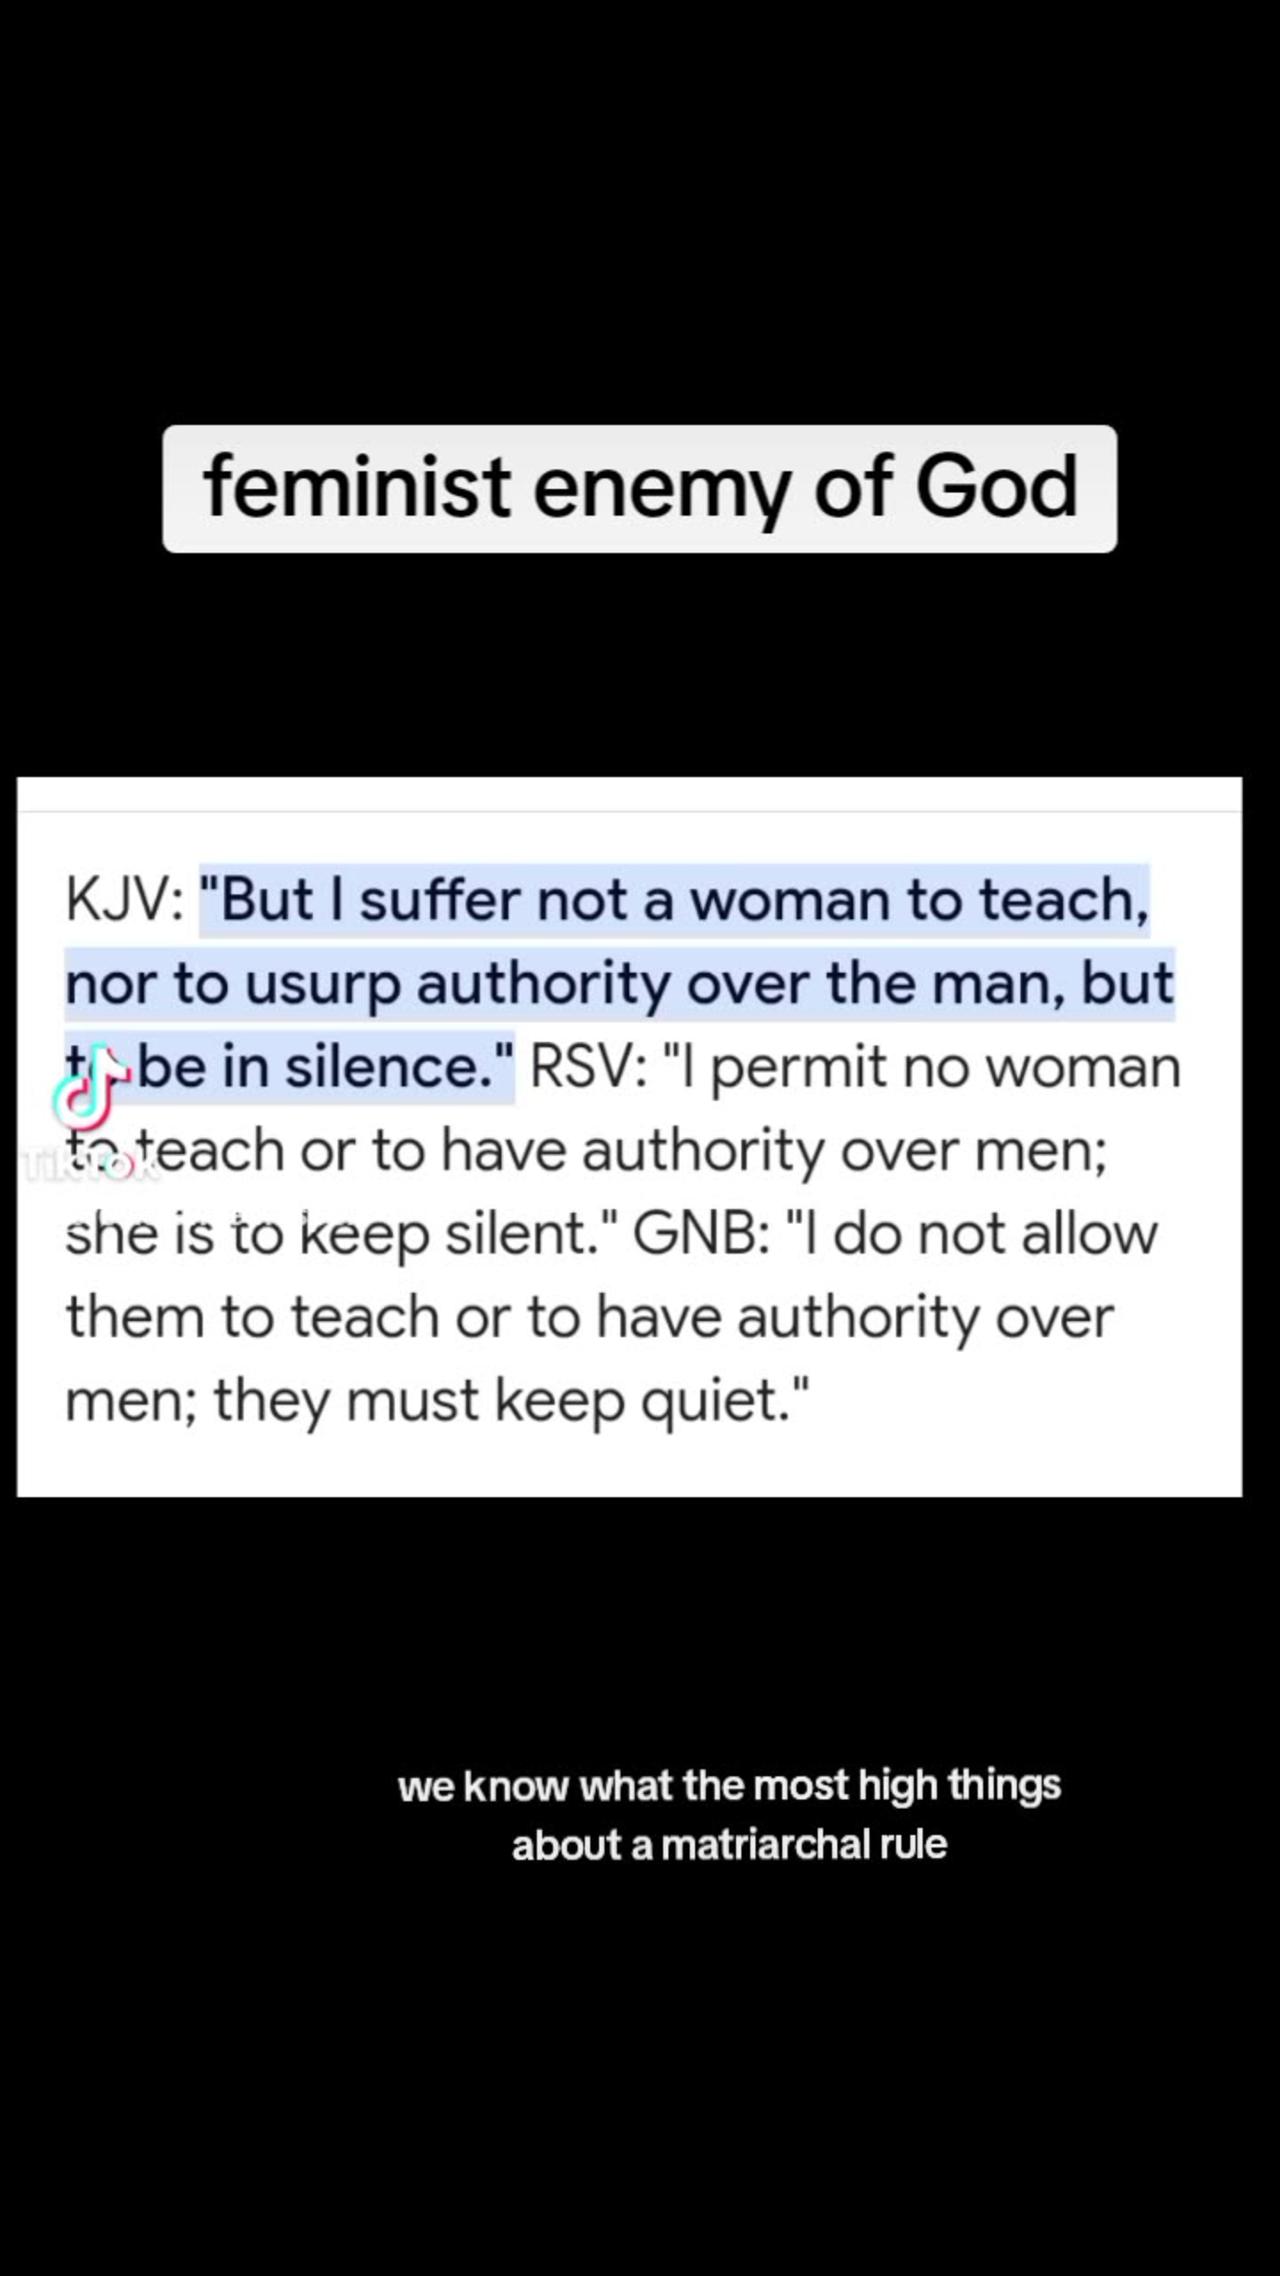 Feminist enemy of God